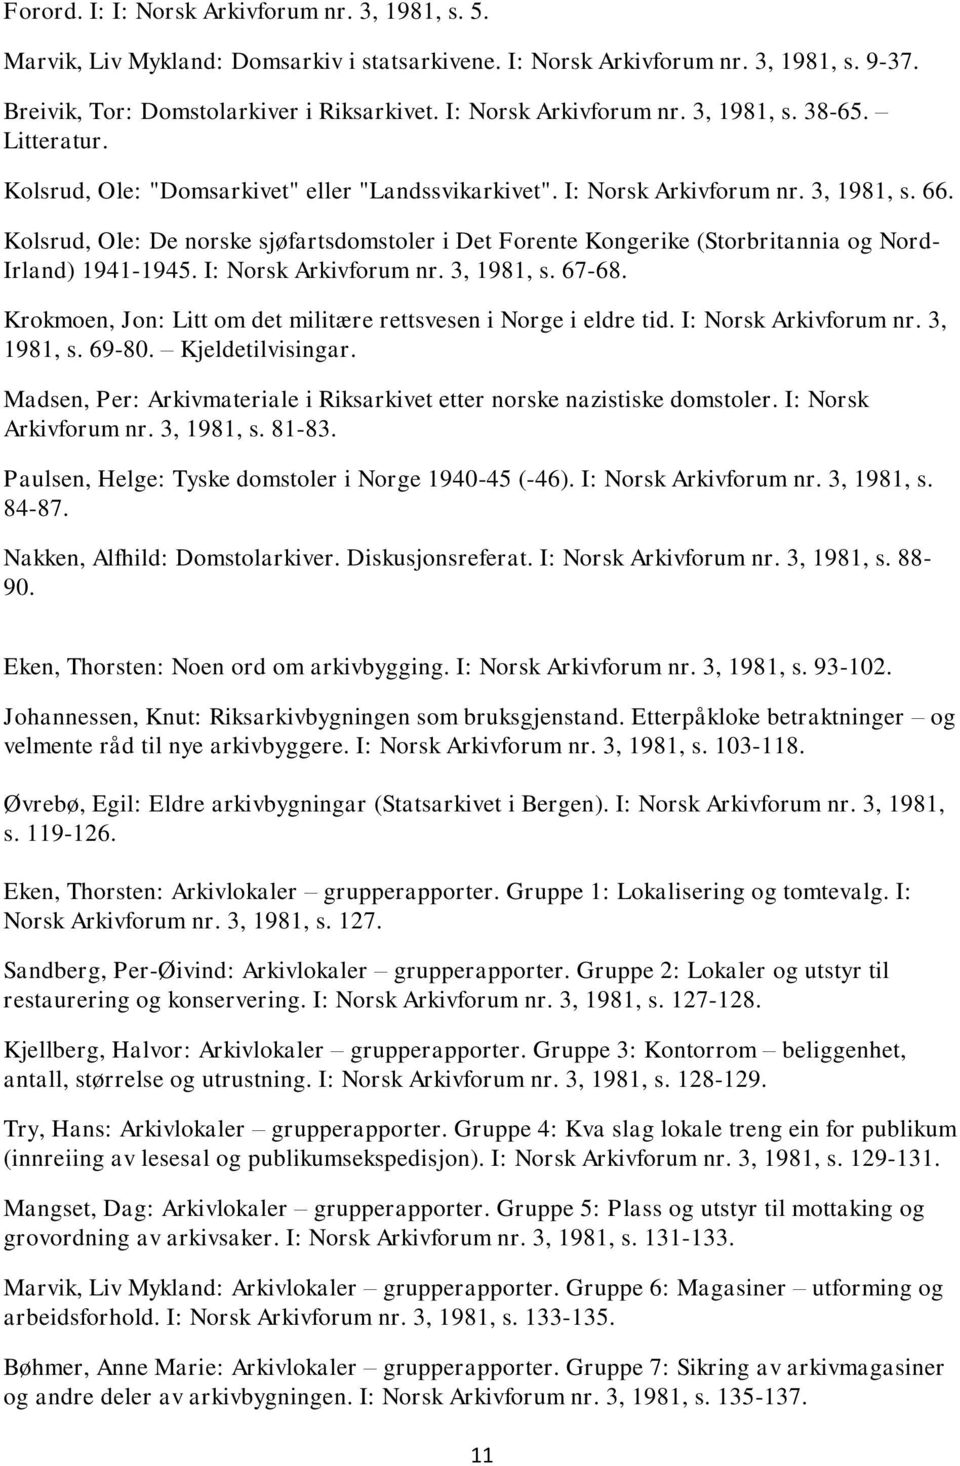 Kolsrud, Ole: De norske sjøfartsdomstoler i Det Forente Kongerike (Storbritannia og Nord- Irland) 1941-1945. I: Norsk Arkivforum nr. 3, 1981, s. 67-68.